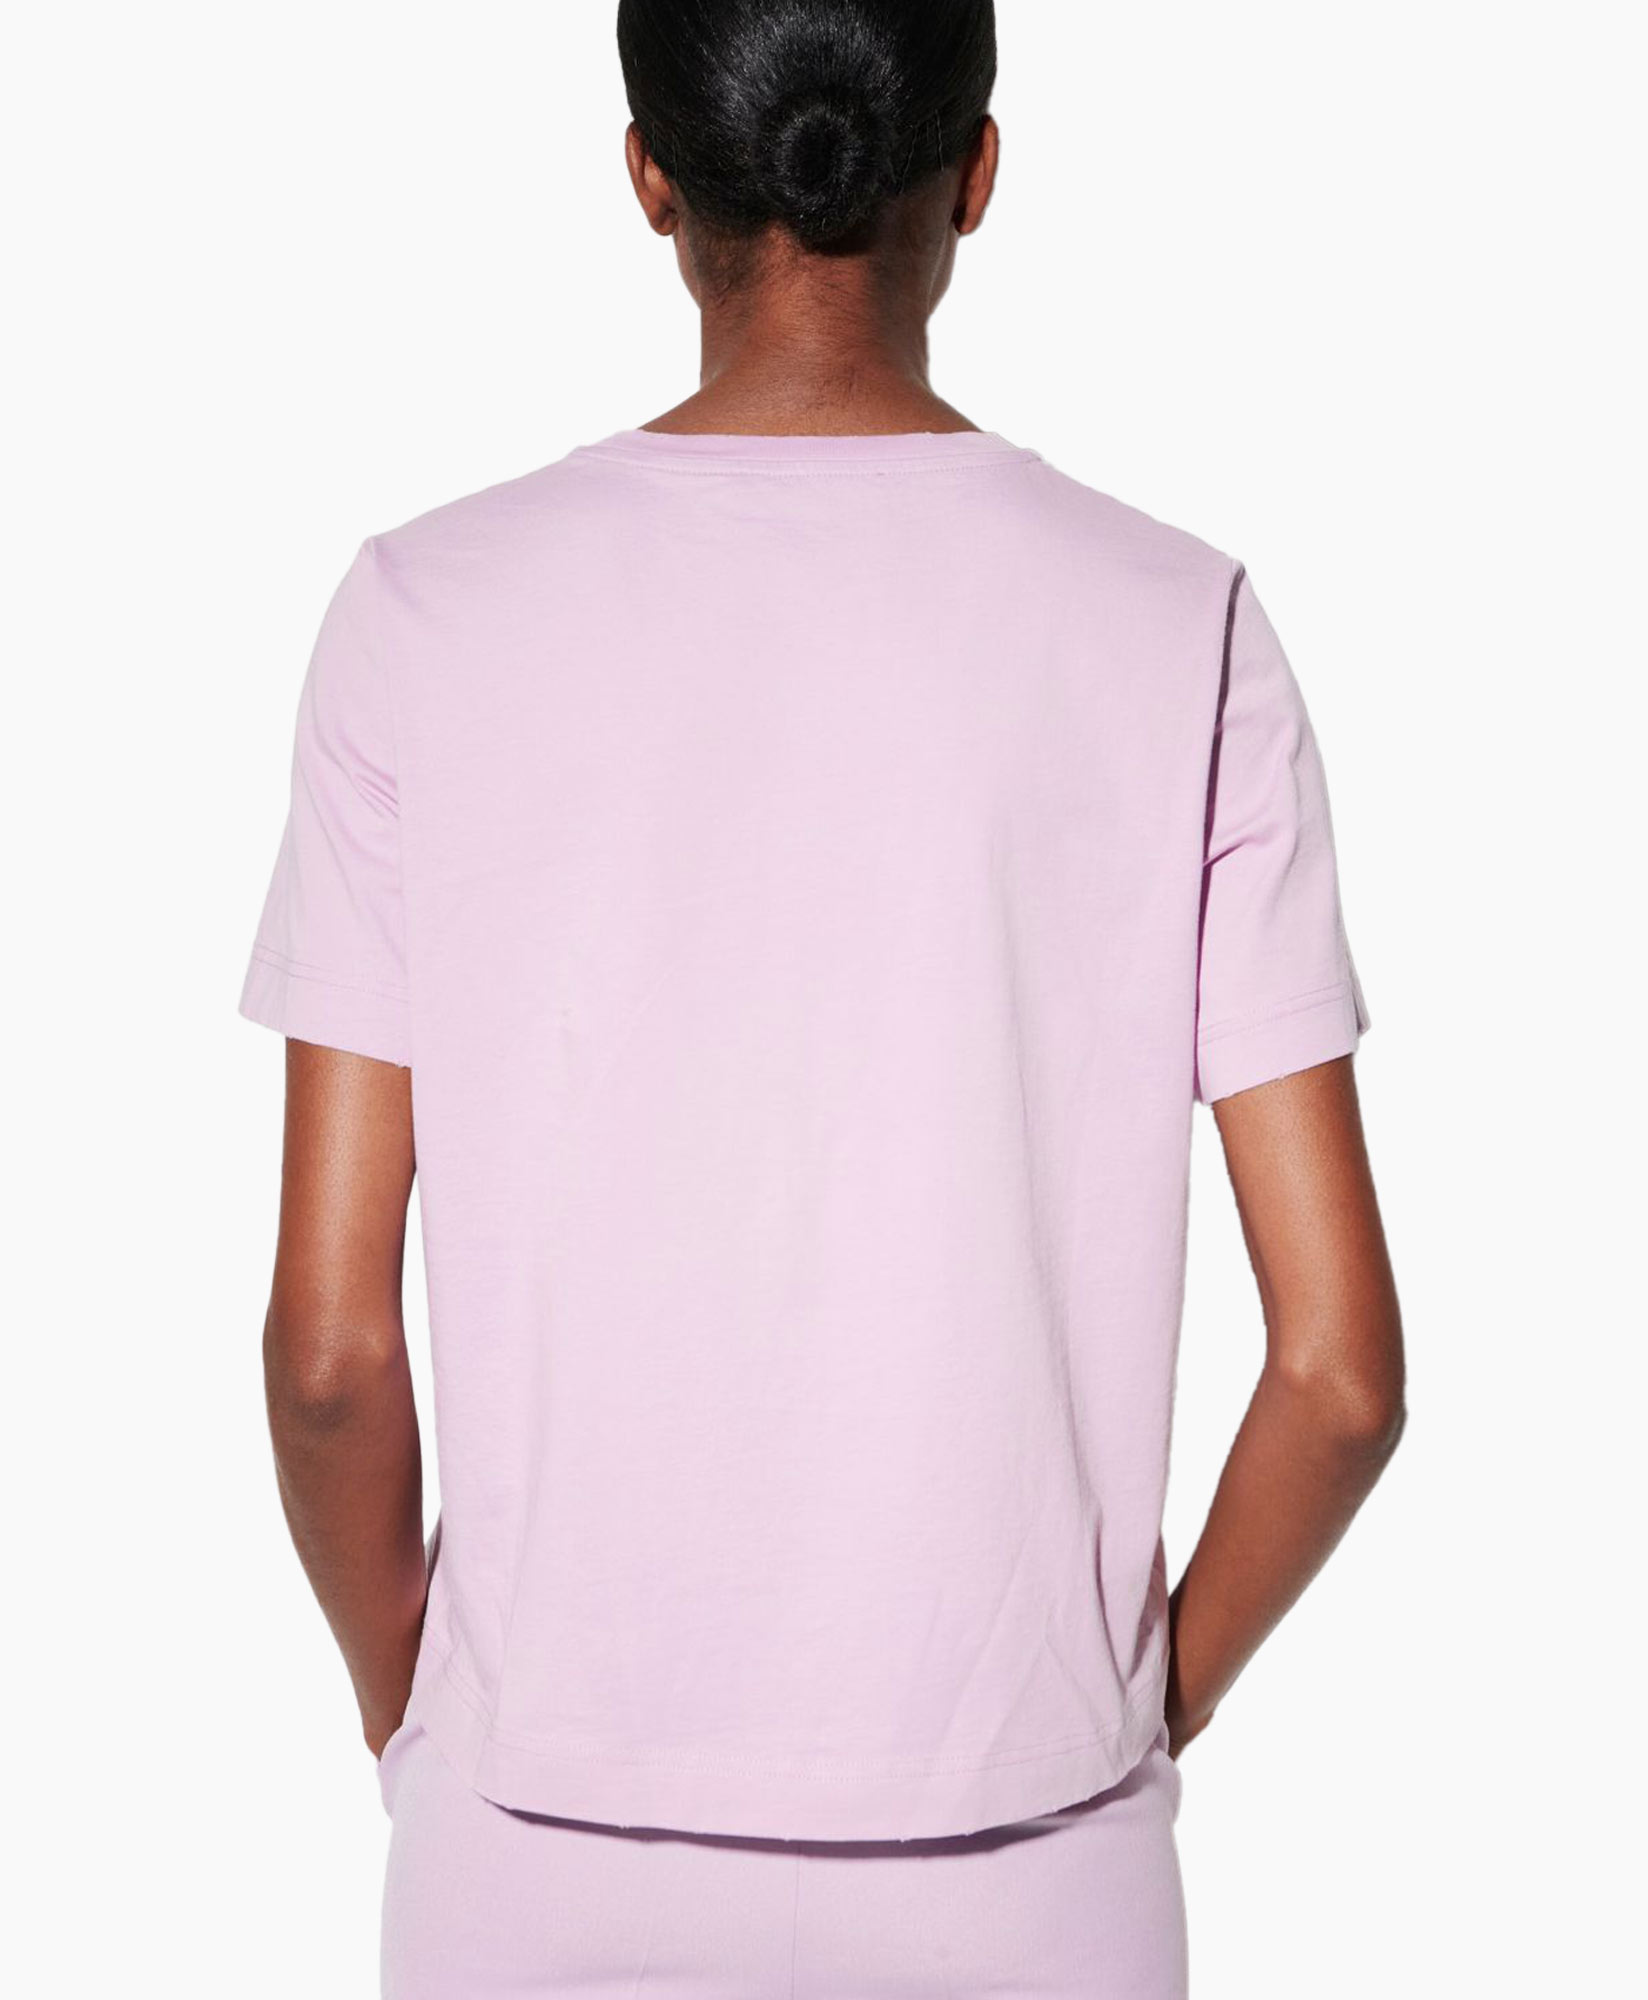 T-shirt Korte Mouw 398104/7799-0 Lavendel